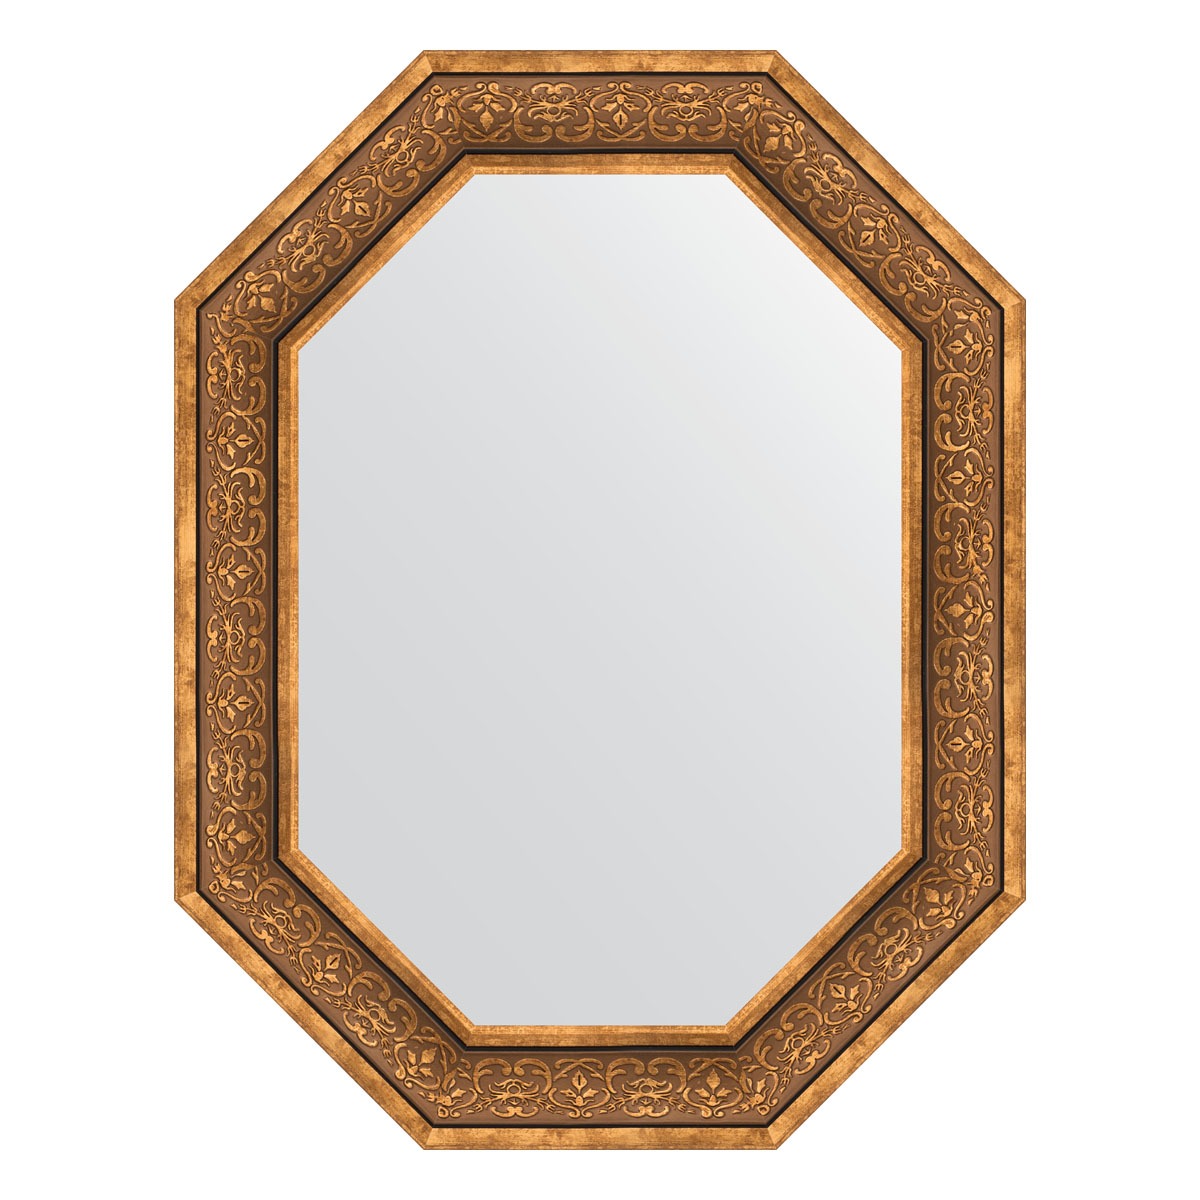 Зеркало в багетной раме Evoform вензель бронзовый 101 мм 69x89 см зеркало 79х109 см вензель бронзовый evoform exclusive by 3474